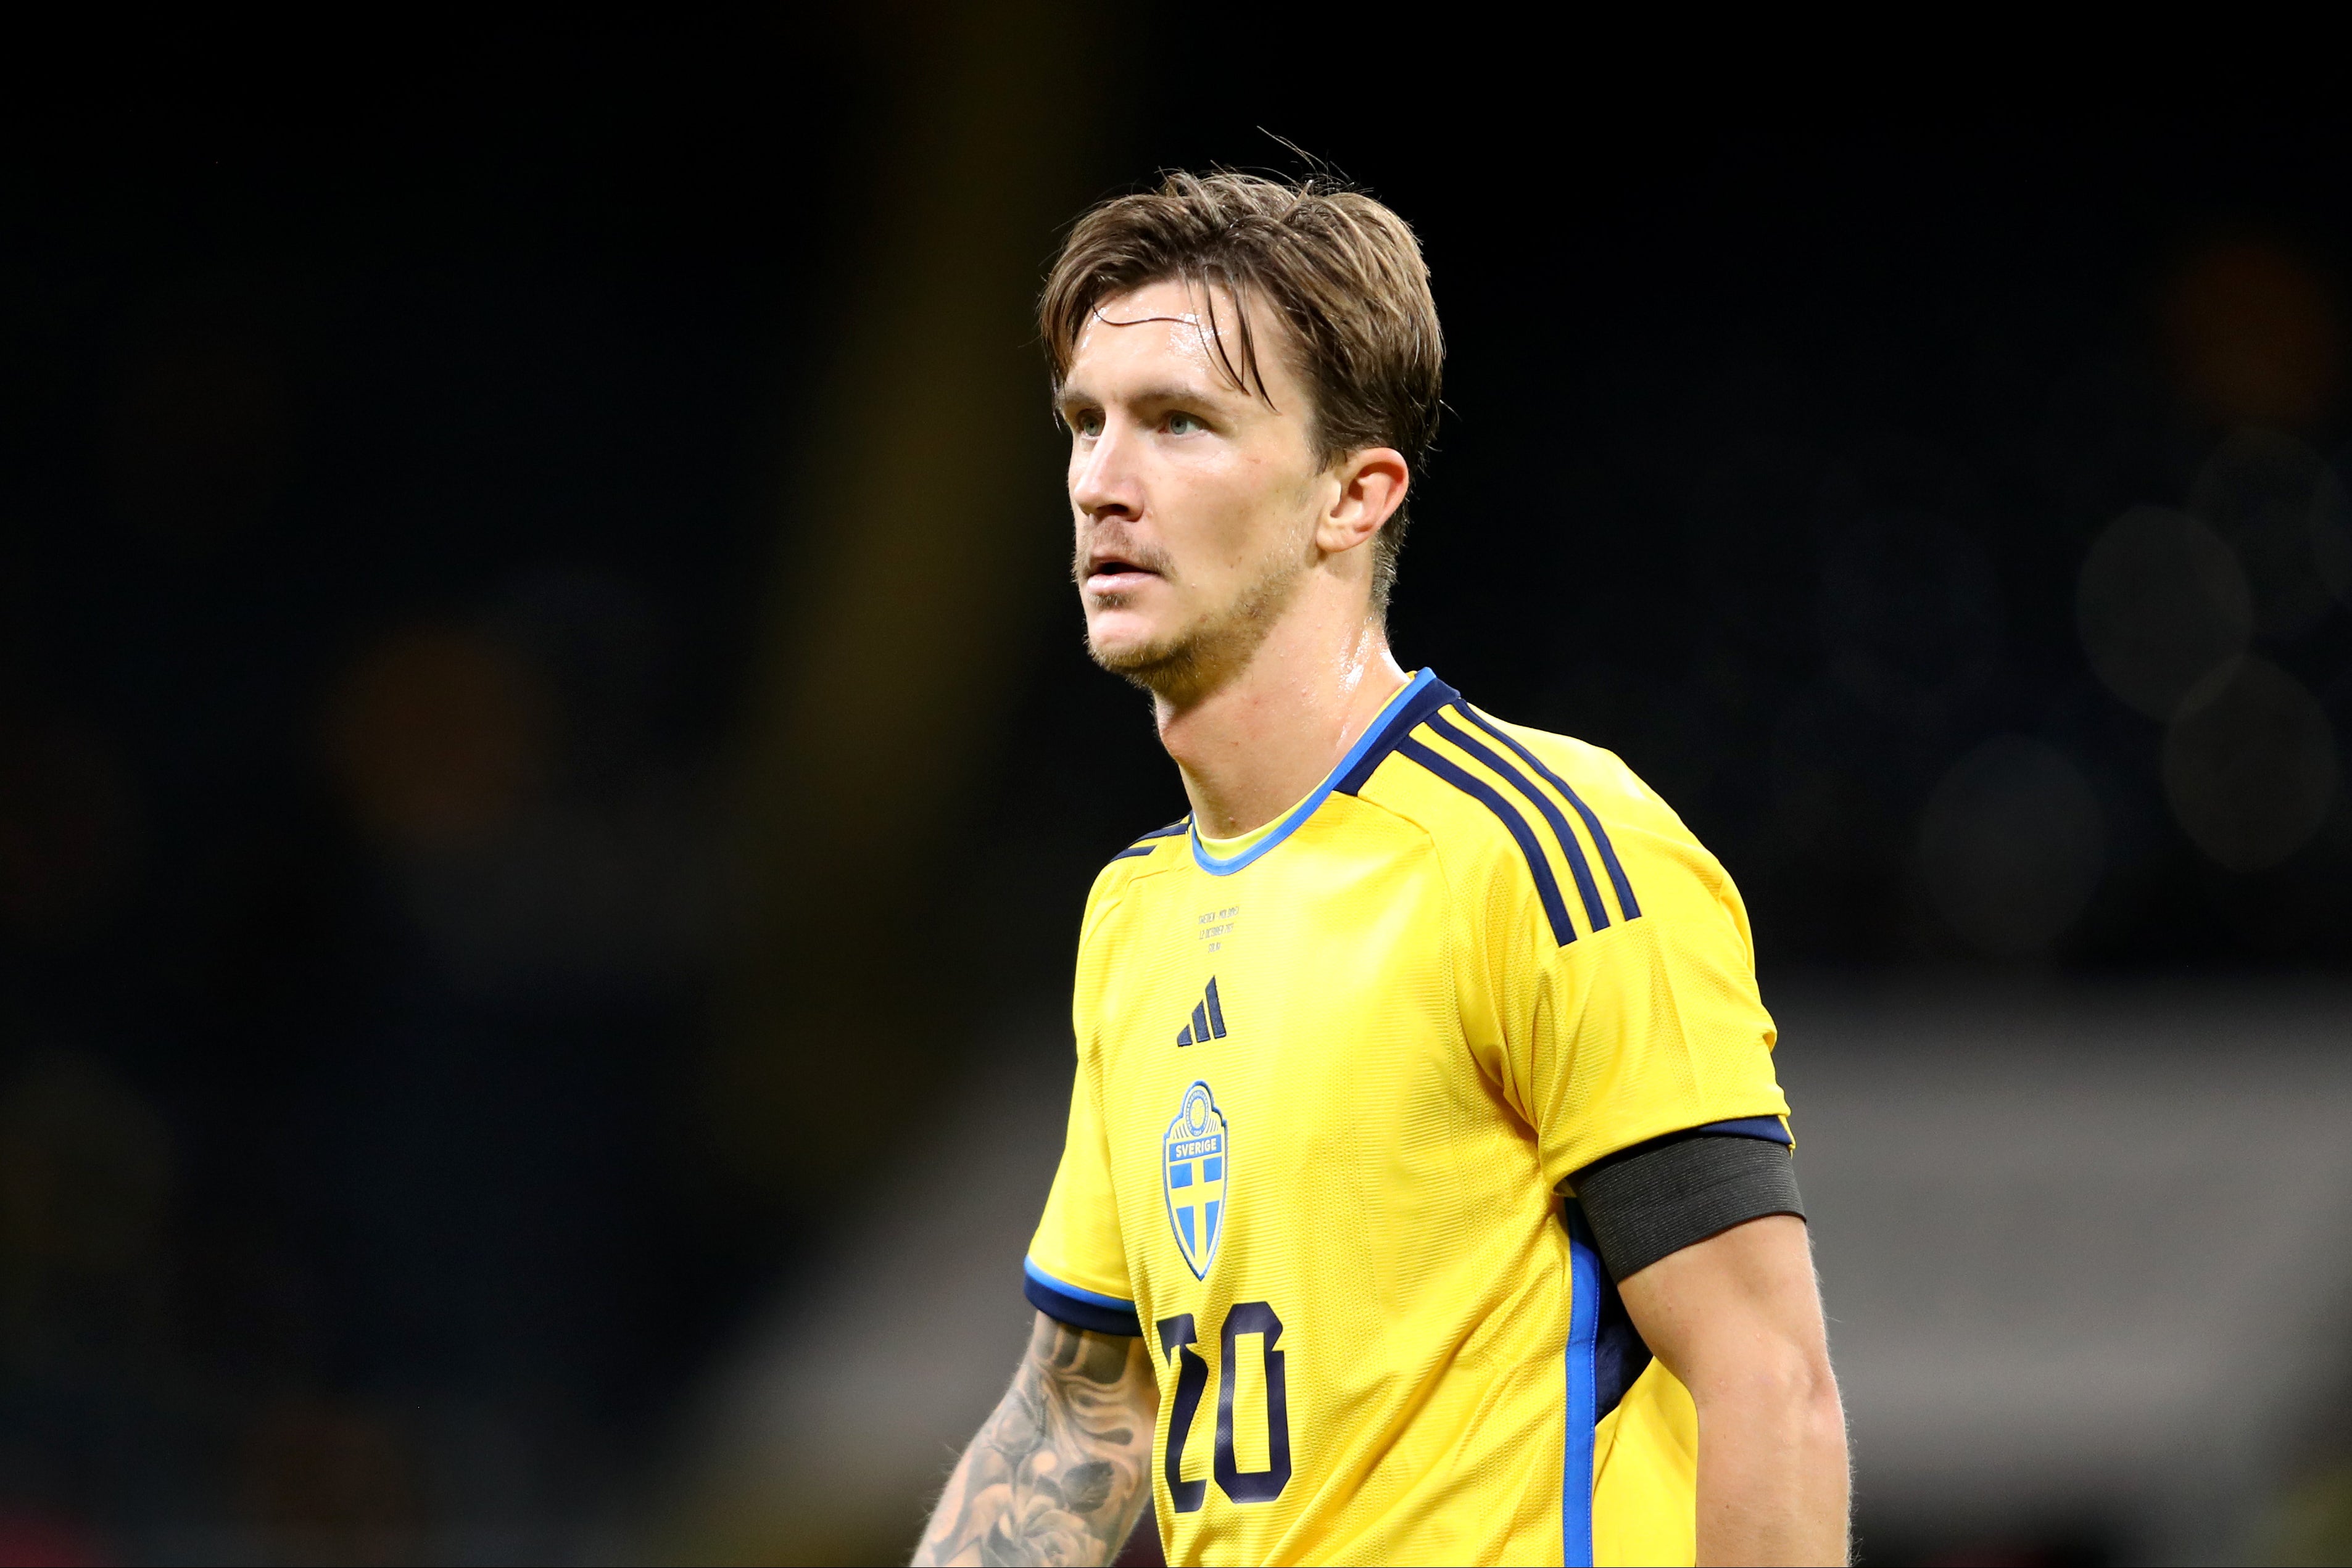 Kristoffer Olsson has won 47 caps for Sweden